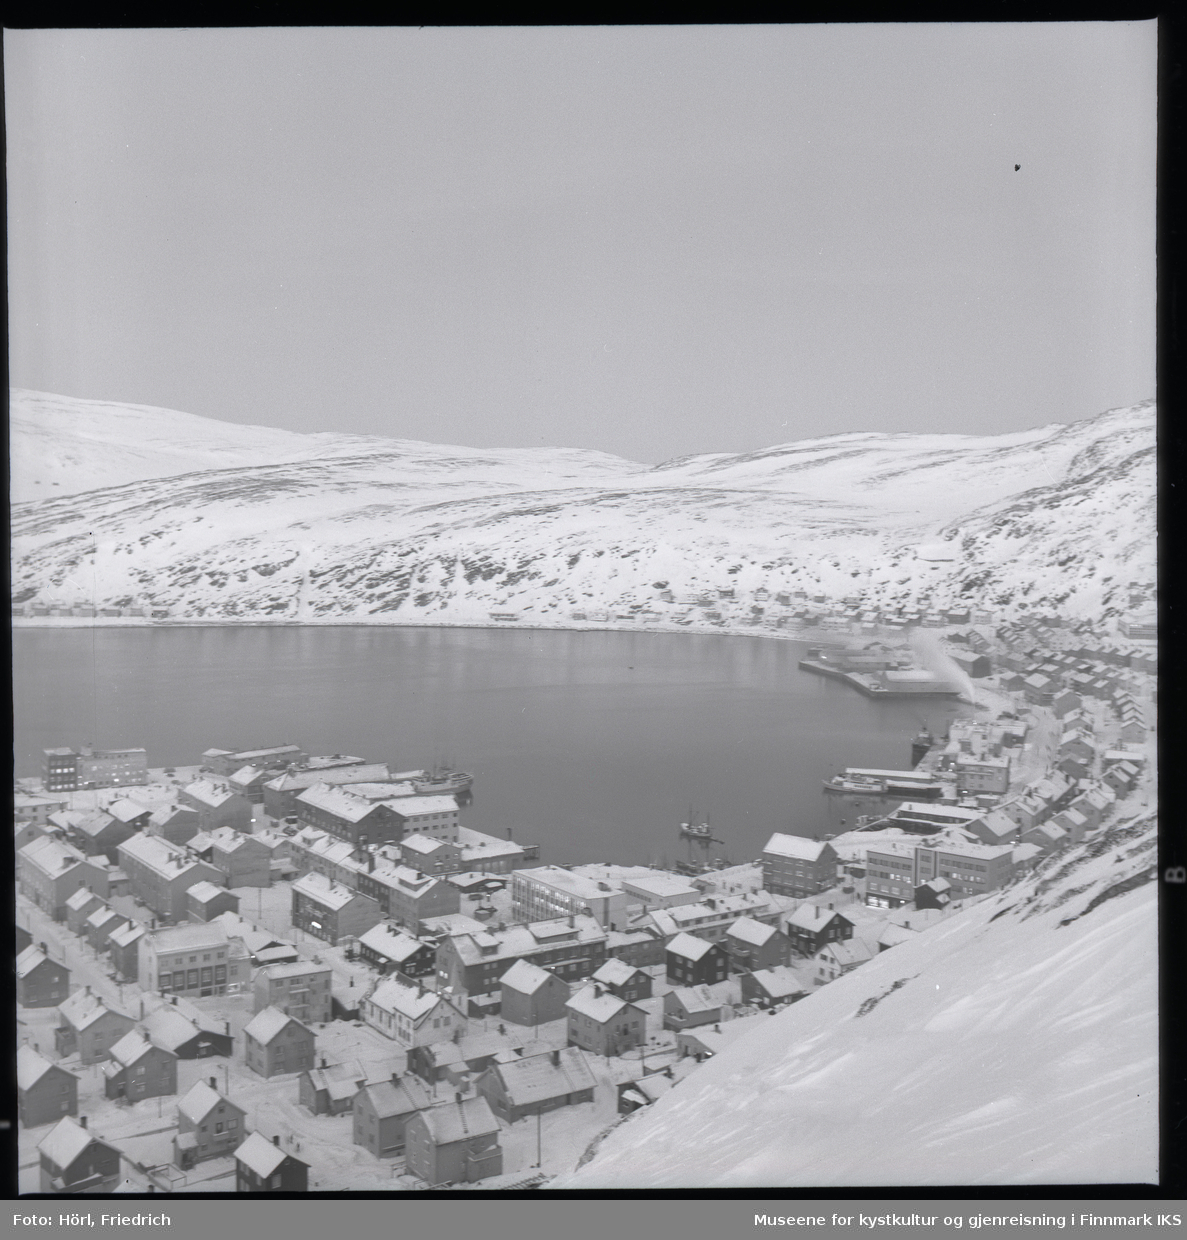 Utsikt over Hammerfest sentrum fra Salenfjellet i vinteren 1957/1958. Mesteparten av byen er gjenreist og man ser mange sentrale bygg som kommunehuset, Handelshuset Nissen, rådhuset, bankbygget, Findusfabrikken og Hauans materialhandel. I bakgrunnen ligger bydelen Molla og det snødekkede fjellandskapet.